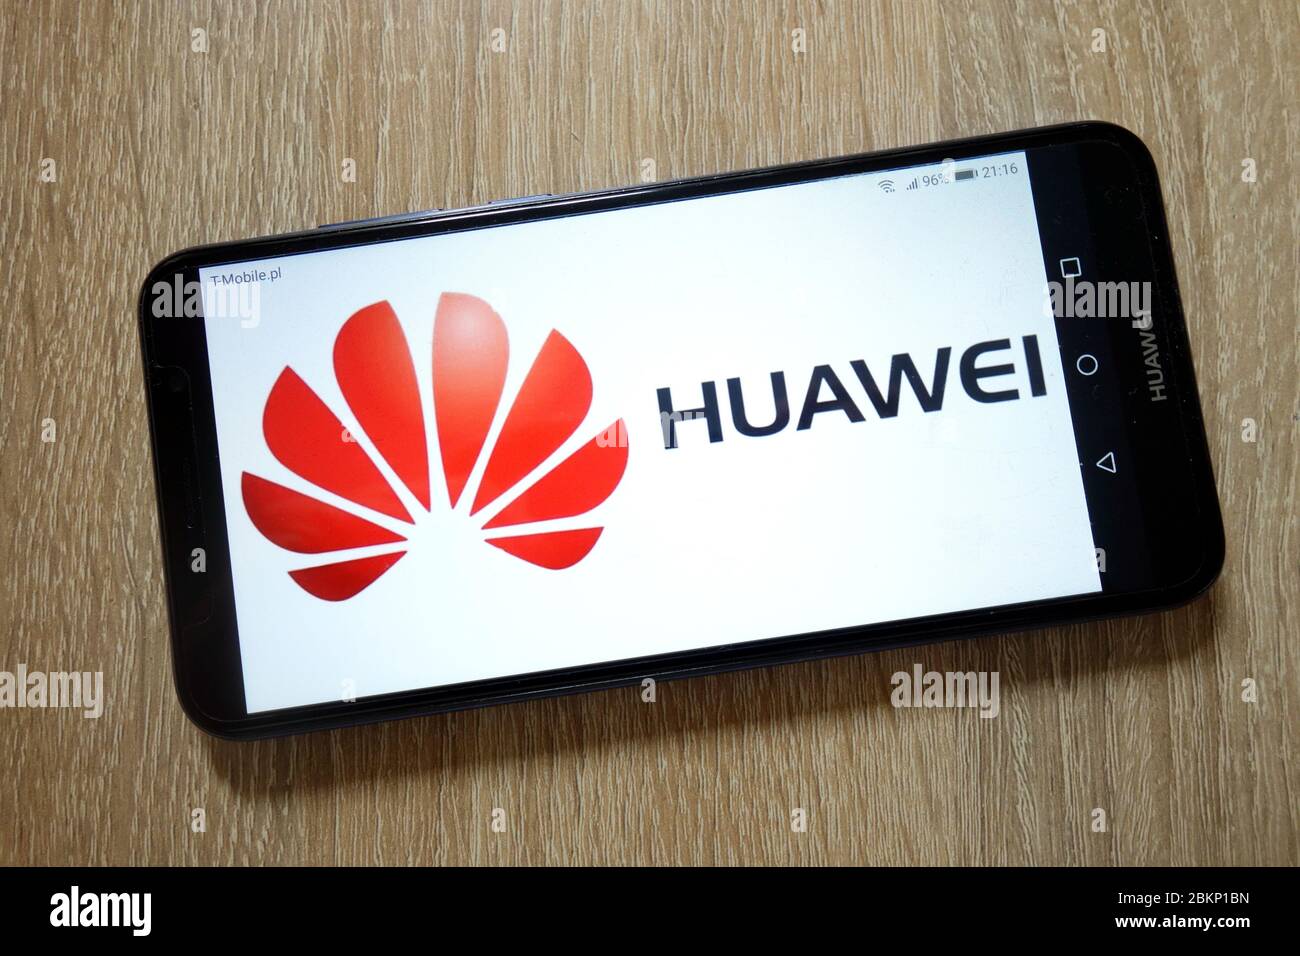 Logo Huawei affiché sur le smartphone Huawei Y6 2018 Banque D'Images